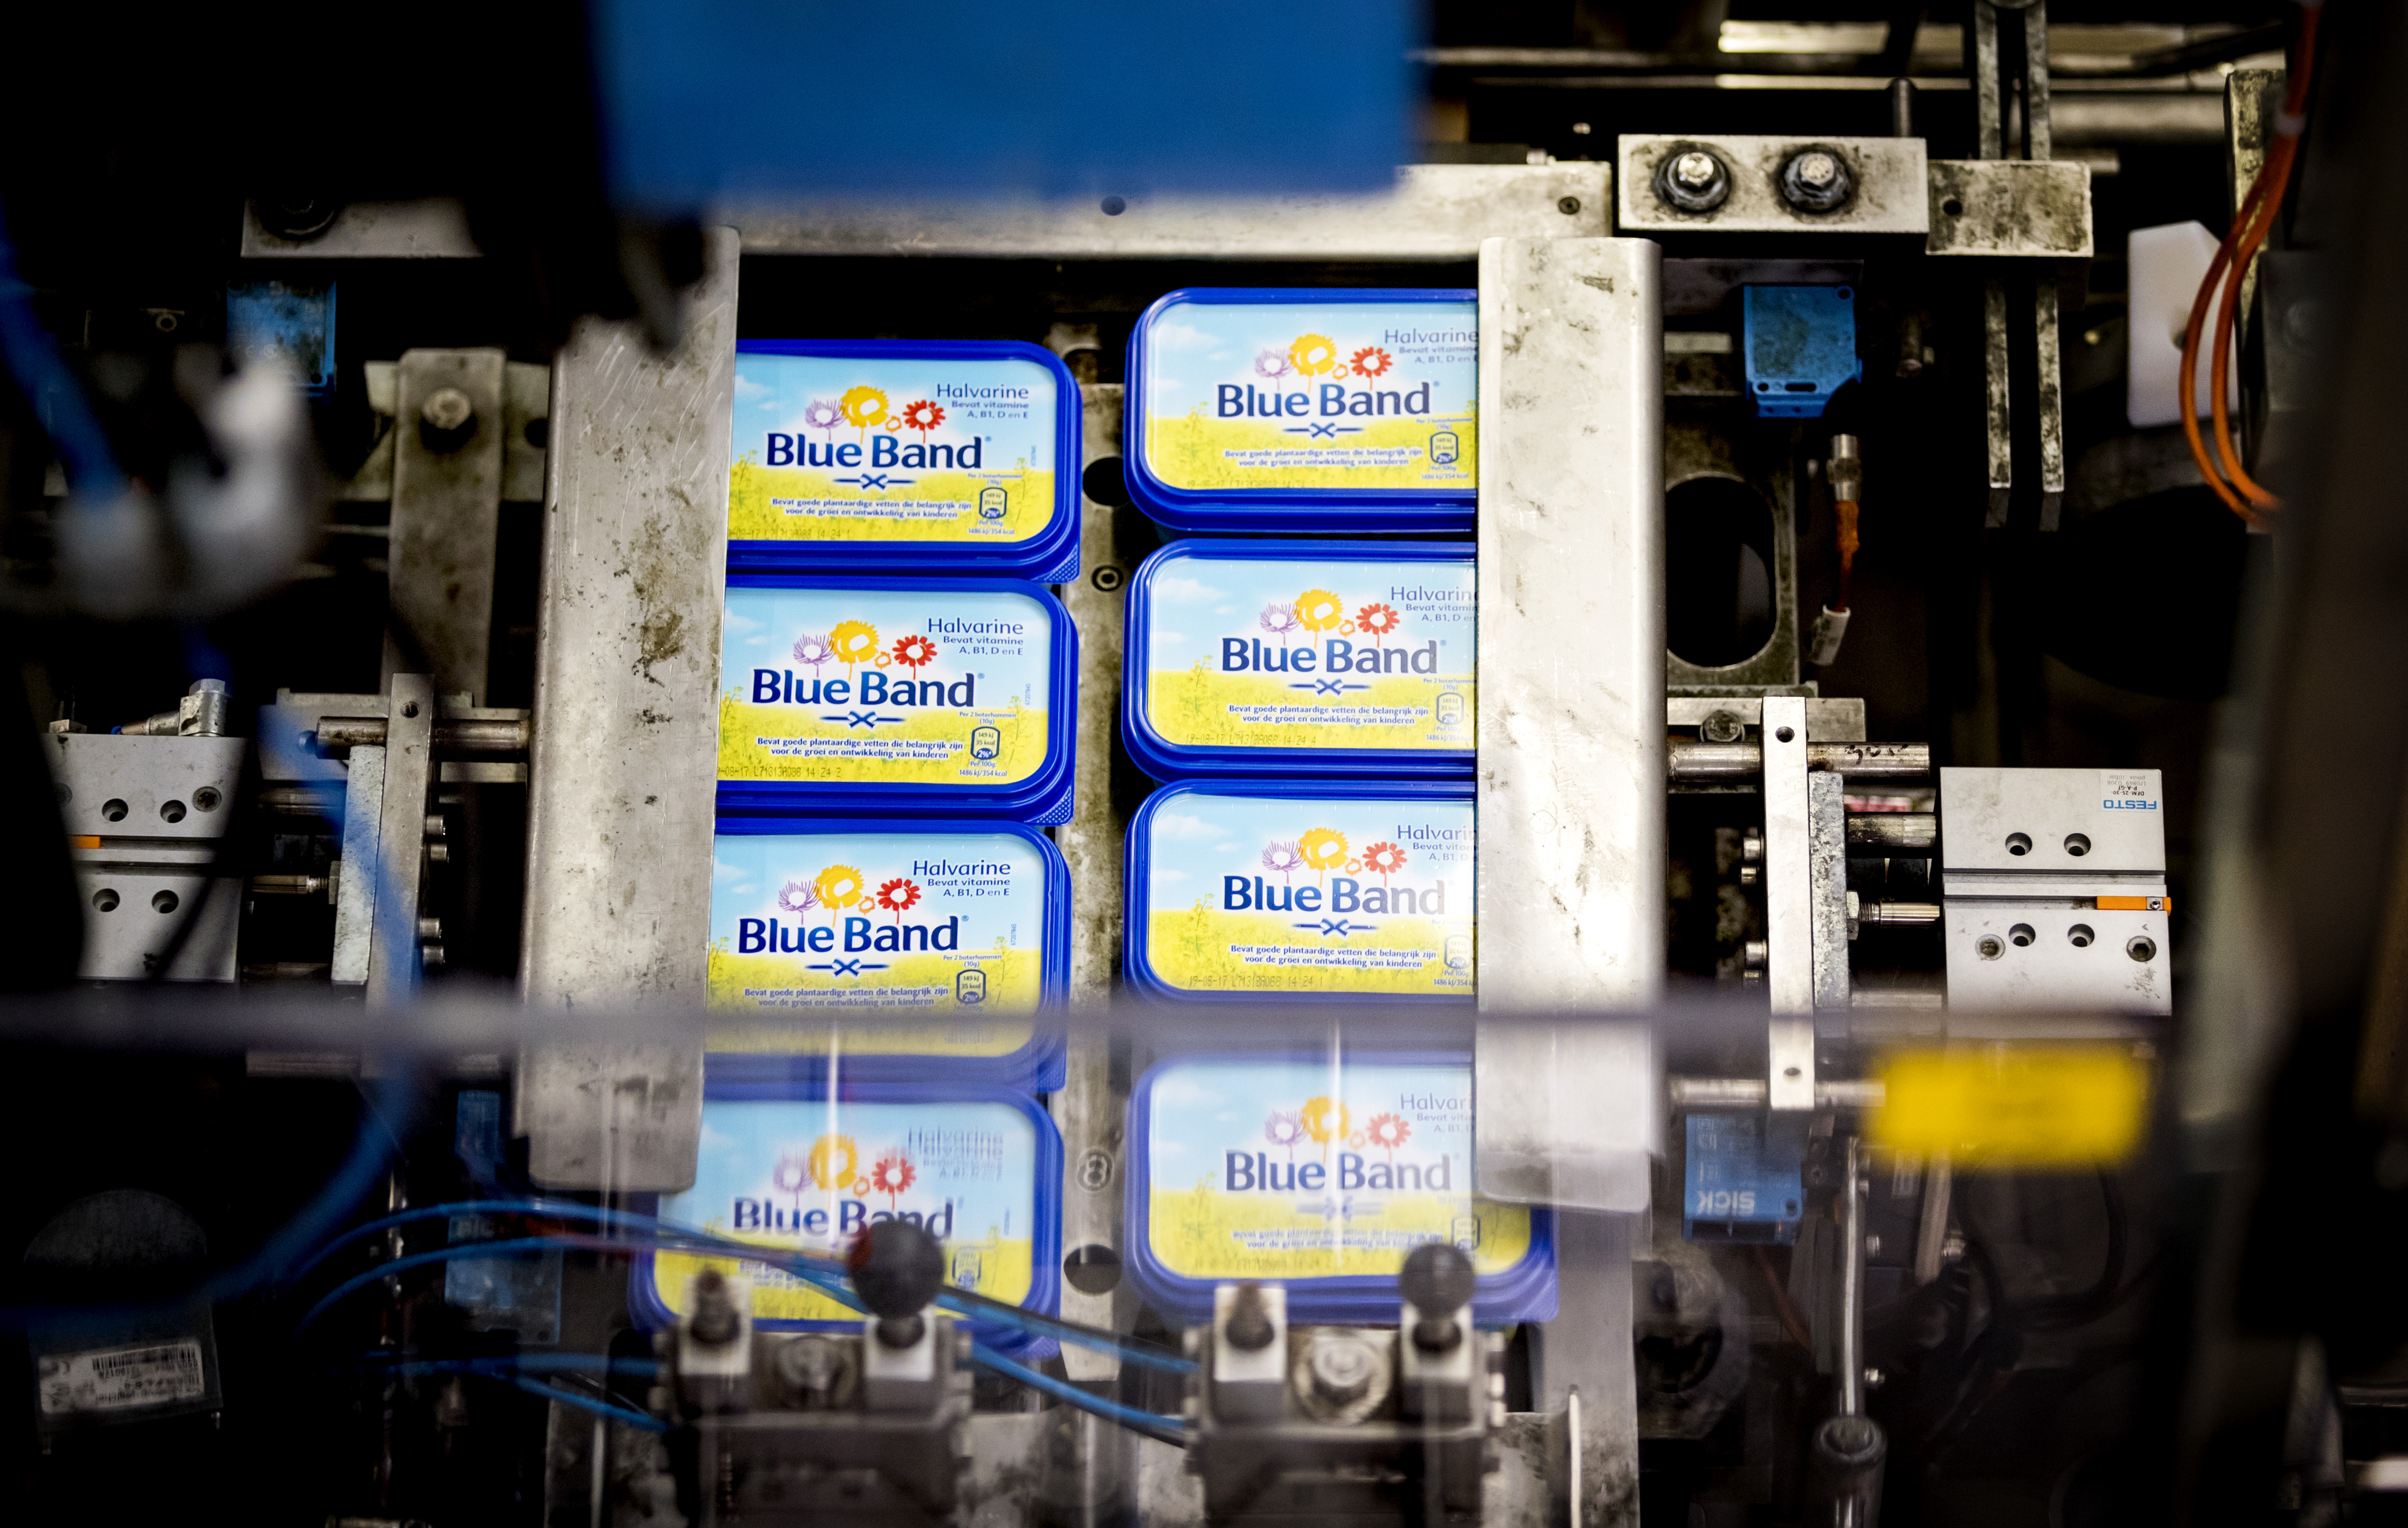 2017-05-11 14:24:11 ROTTERDAM - De productie in de margarinefabriek van Unilever in Rotterdam. Het bedrijf stapt uit de productie van margarine en ander smeerbaar broodbeleg. Dat betekent dat merken als Becel, Blue Band, Bona en Zeeuws Meisje in de etalage gaan. ANP XTRA KOEN VAN WEEL